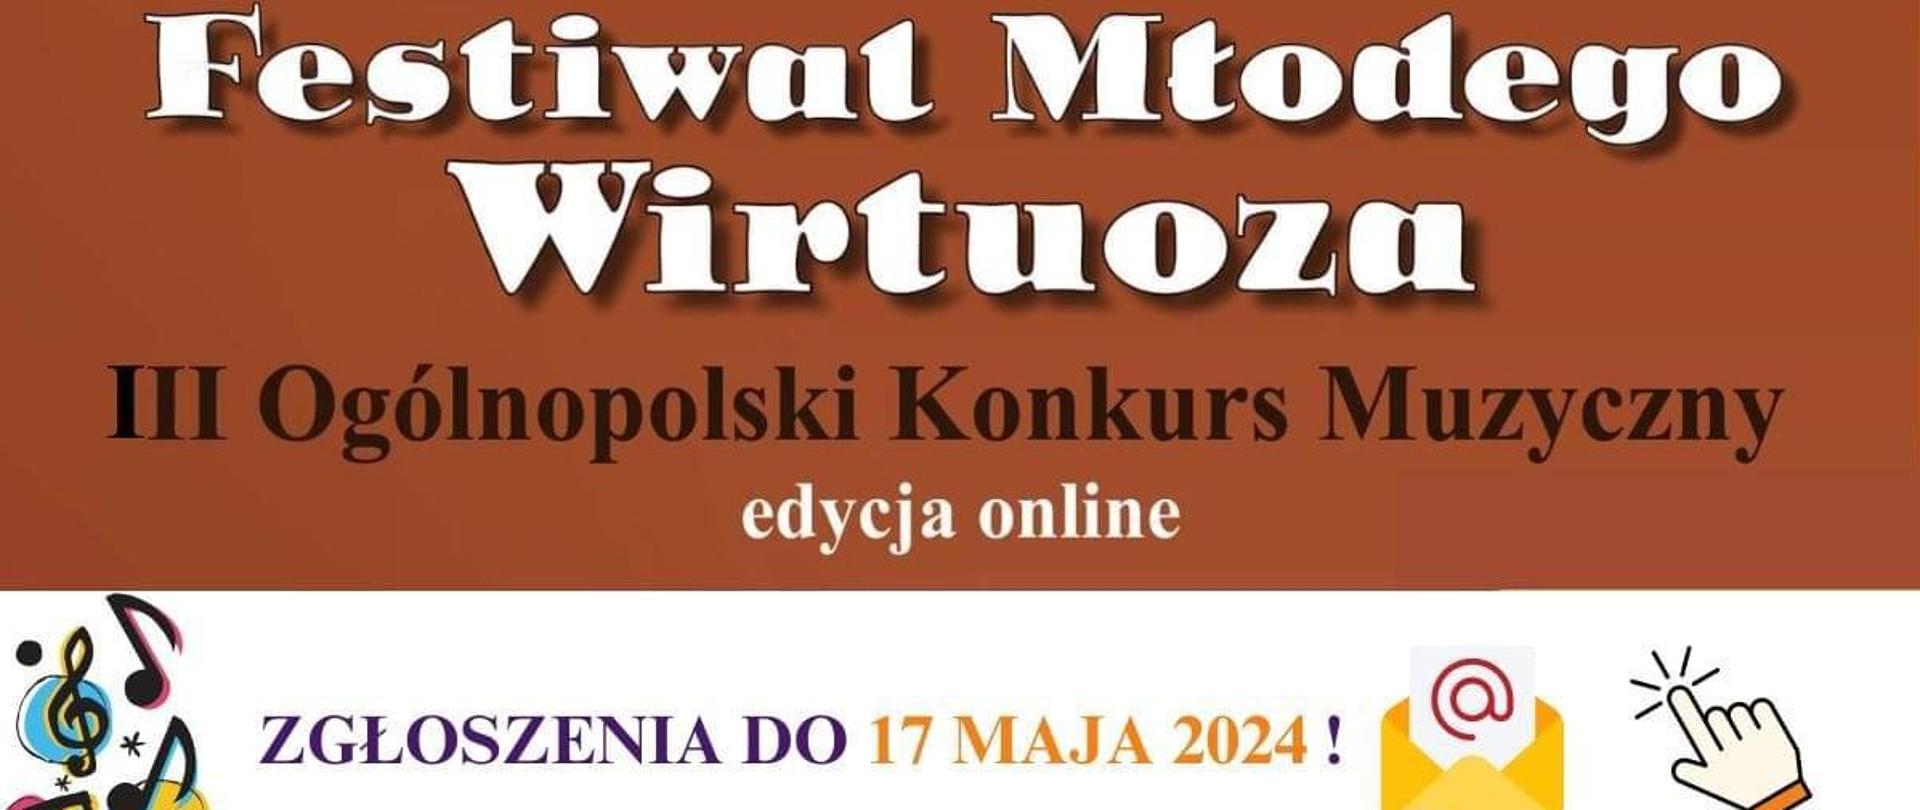 Na brązowym tle białe litery - Festiwal Młodego Wirtuoza, poniżej czarną czcionką III Ogólnopolski Konkurs Muzyczny. Poniżej na białym tle symbole kolorowych nut po lewej stronie, po prawej symbole e-maila.